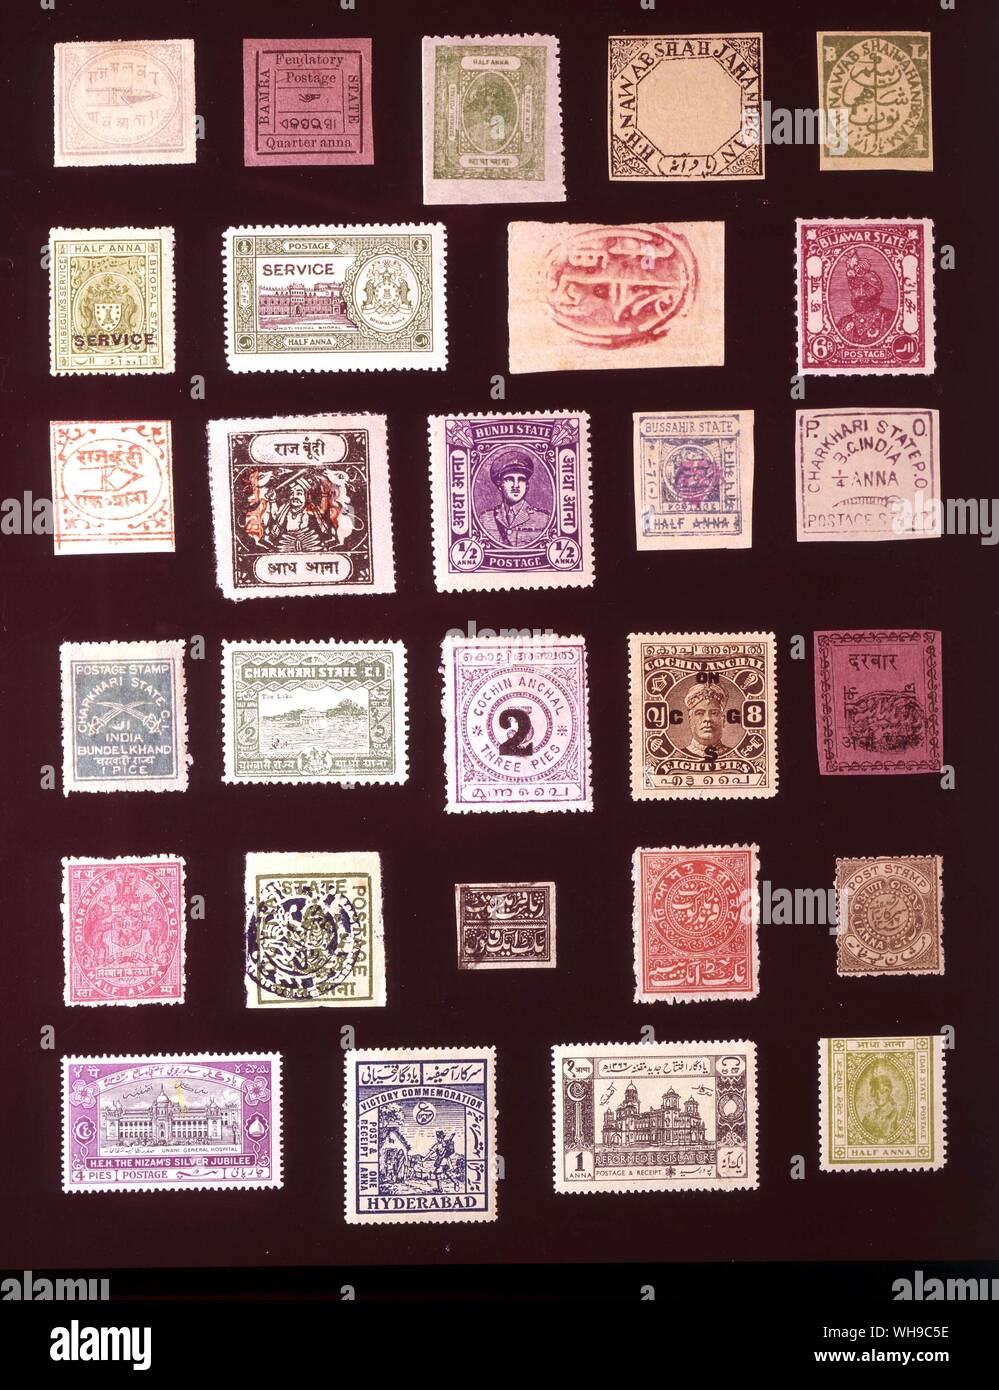 Asien - indischer FÜRSTENSTAATEN (Seite 1 von 2). (Von links nach rechts) 1. Alwar, 0,25 Anna, 1877, 2. Bamra 1890, 0,25 Anna 3. Barwani, 0,5 Anna, 1921, 4. Bhopal, 0,25 Anna, 1889, 5. Bhopal, 0,25 Anna, 1896, 6. Bhopal, 0,25 Anna, 1908, 7. Bhopal, 0,5 Anna, 1936, 8. Bhor, 0,5 Anna, 1879, 9. Bijawar, 6 Pies, 1935, 10. Bundi, 1 Anna, 1898, 11. Bundi. 0.5 Anna 1918, 12. Bundi, 0,5 Anna 1947, 13. Bussahir, 0,5 Anna, 1900, 14. Charkari, 0,25 Anna, 1894, 15. Charkari, 1 Stück, 1912 16. Charkari, 0,5 Anna, 1931, 17. Cochin, 2 Kuchen, 1909 18. Cochin, 8 Pies 1911, 19. Dhar, 0,5 Anna 1897, 20. Dhar, 0,5 Anna, Stockfoto